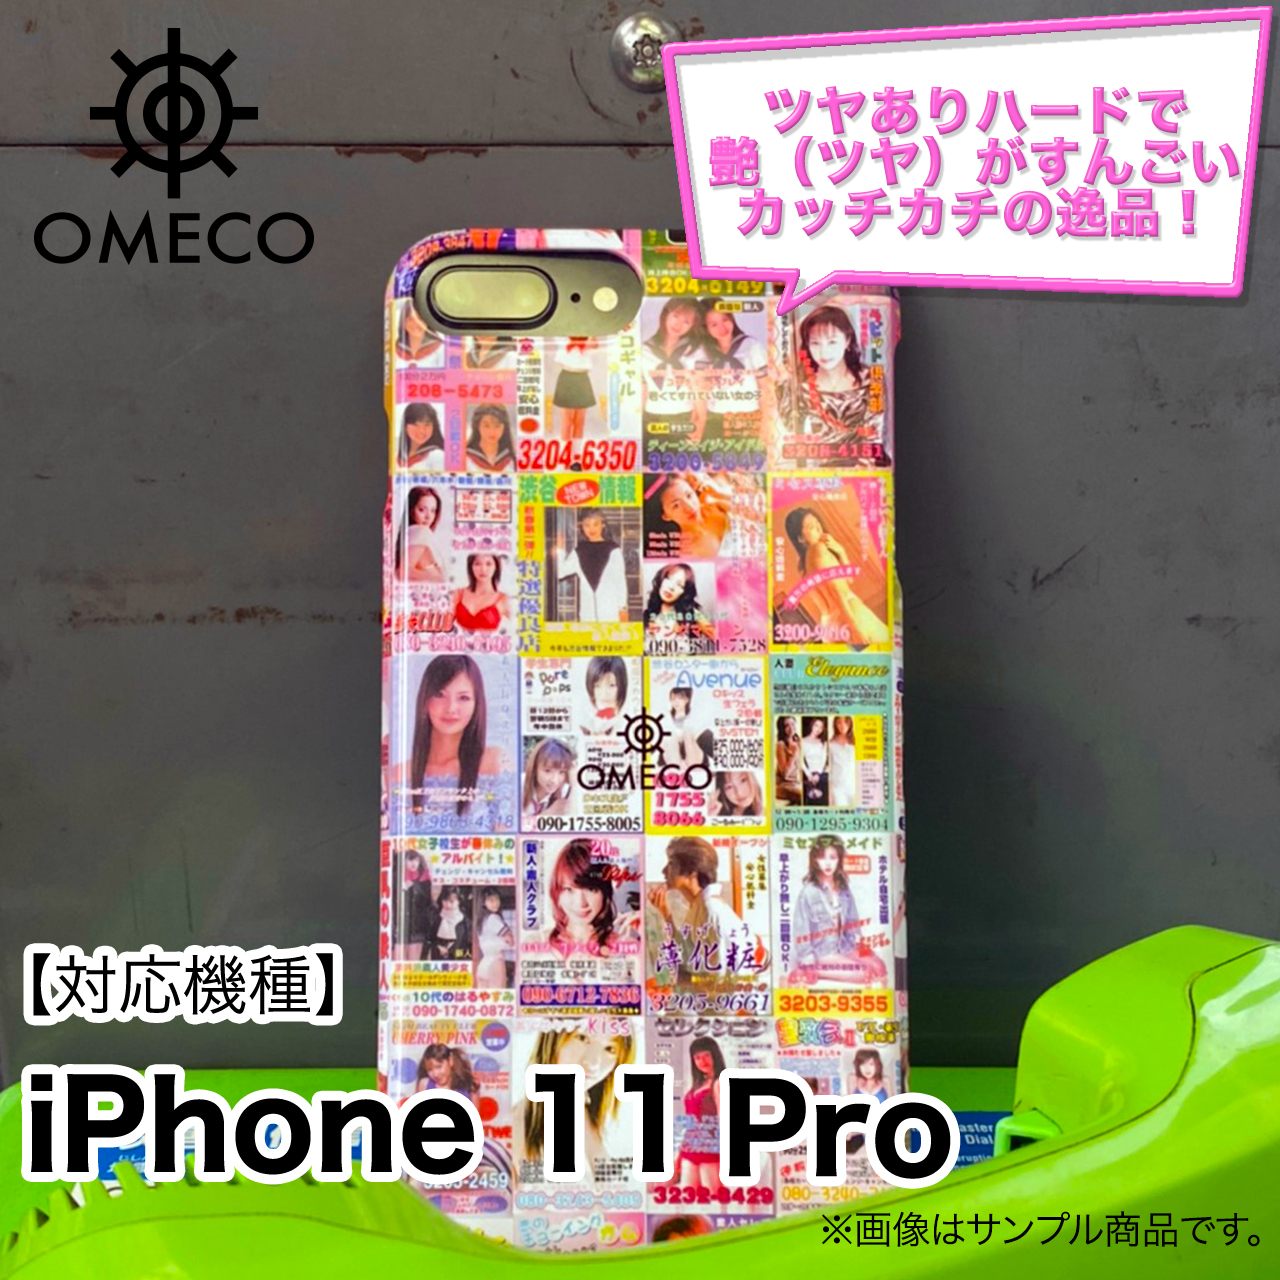 Omeco ピンクチラシ Iphone ケース アイフォン 11 Pro 対応 ツヤ有りハードタイプ 納期は約1 2週間程度になります 公式 変態高級腕時計 Omeco オンラインショップ